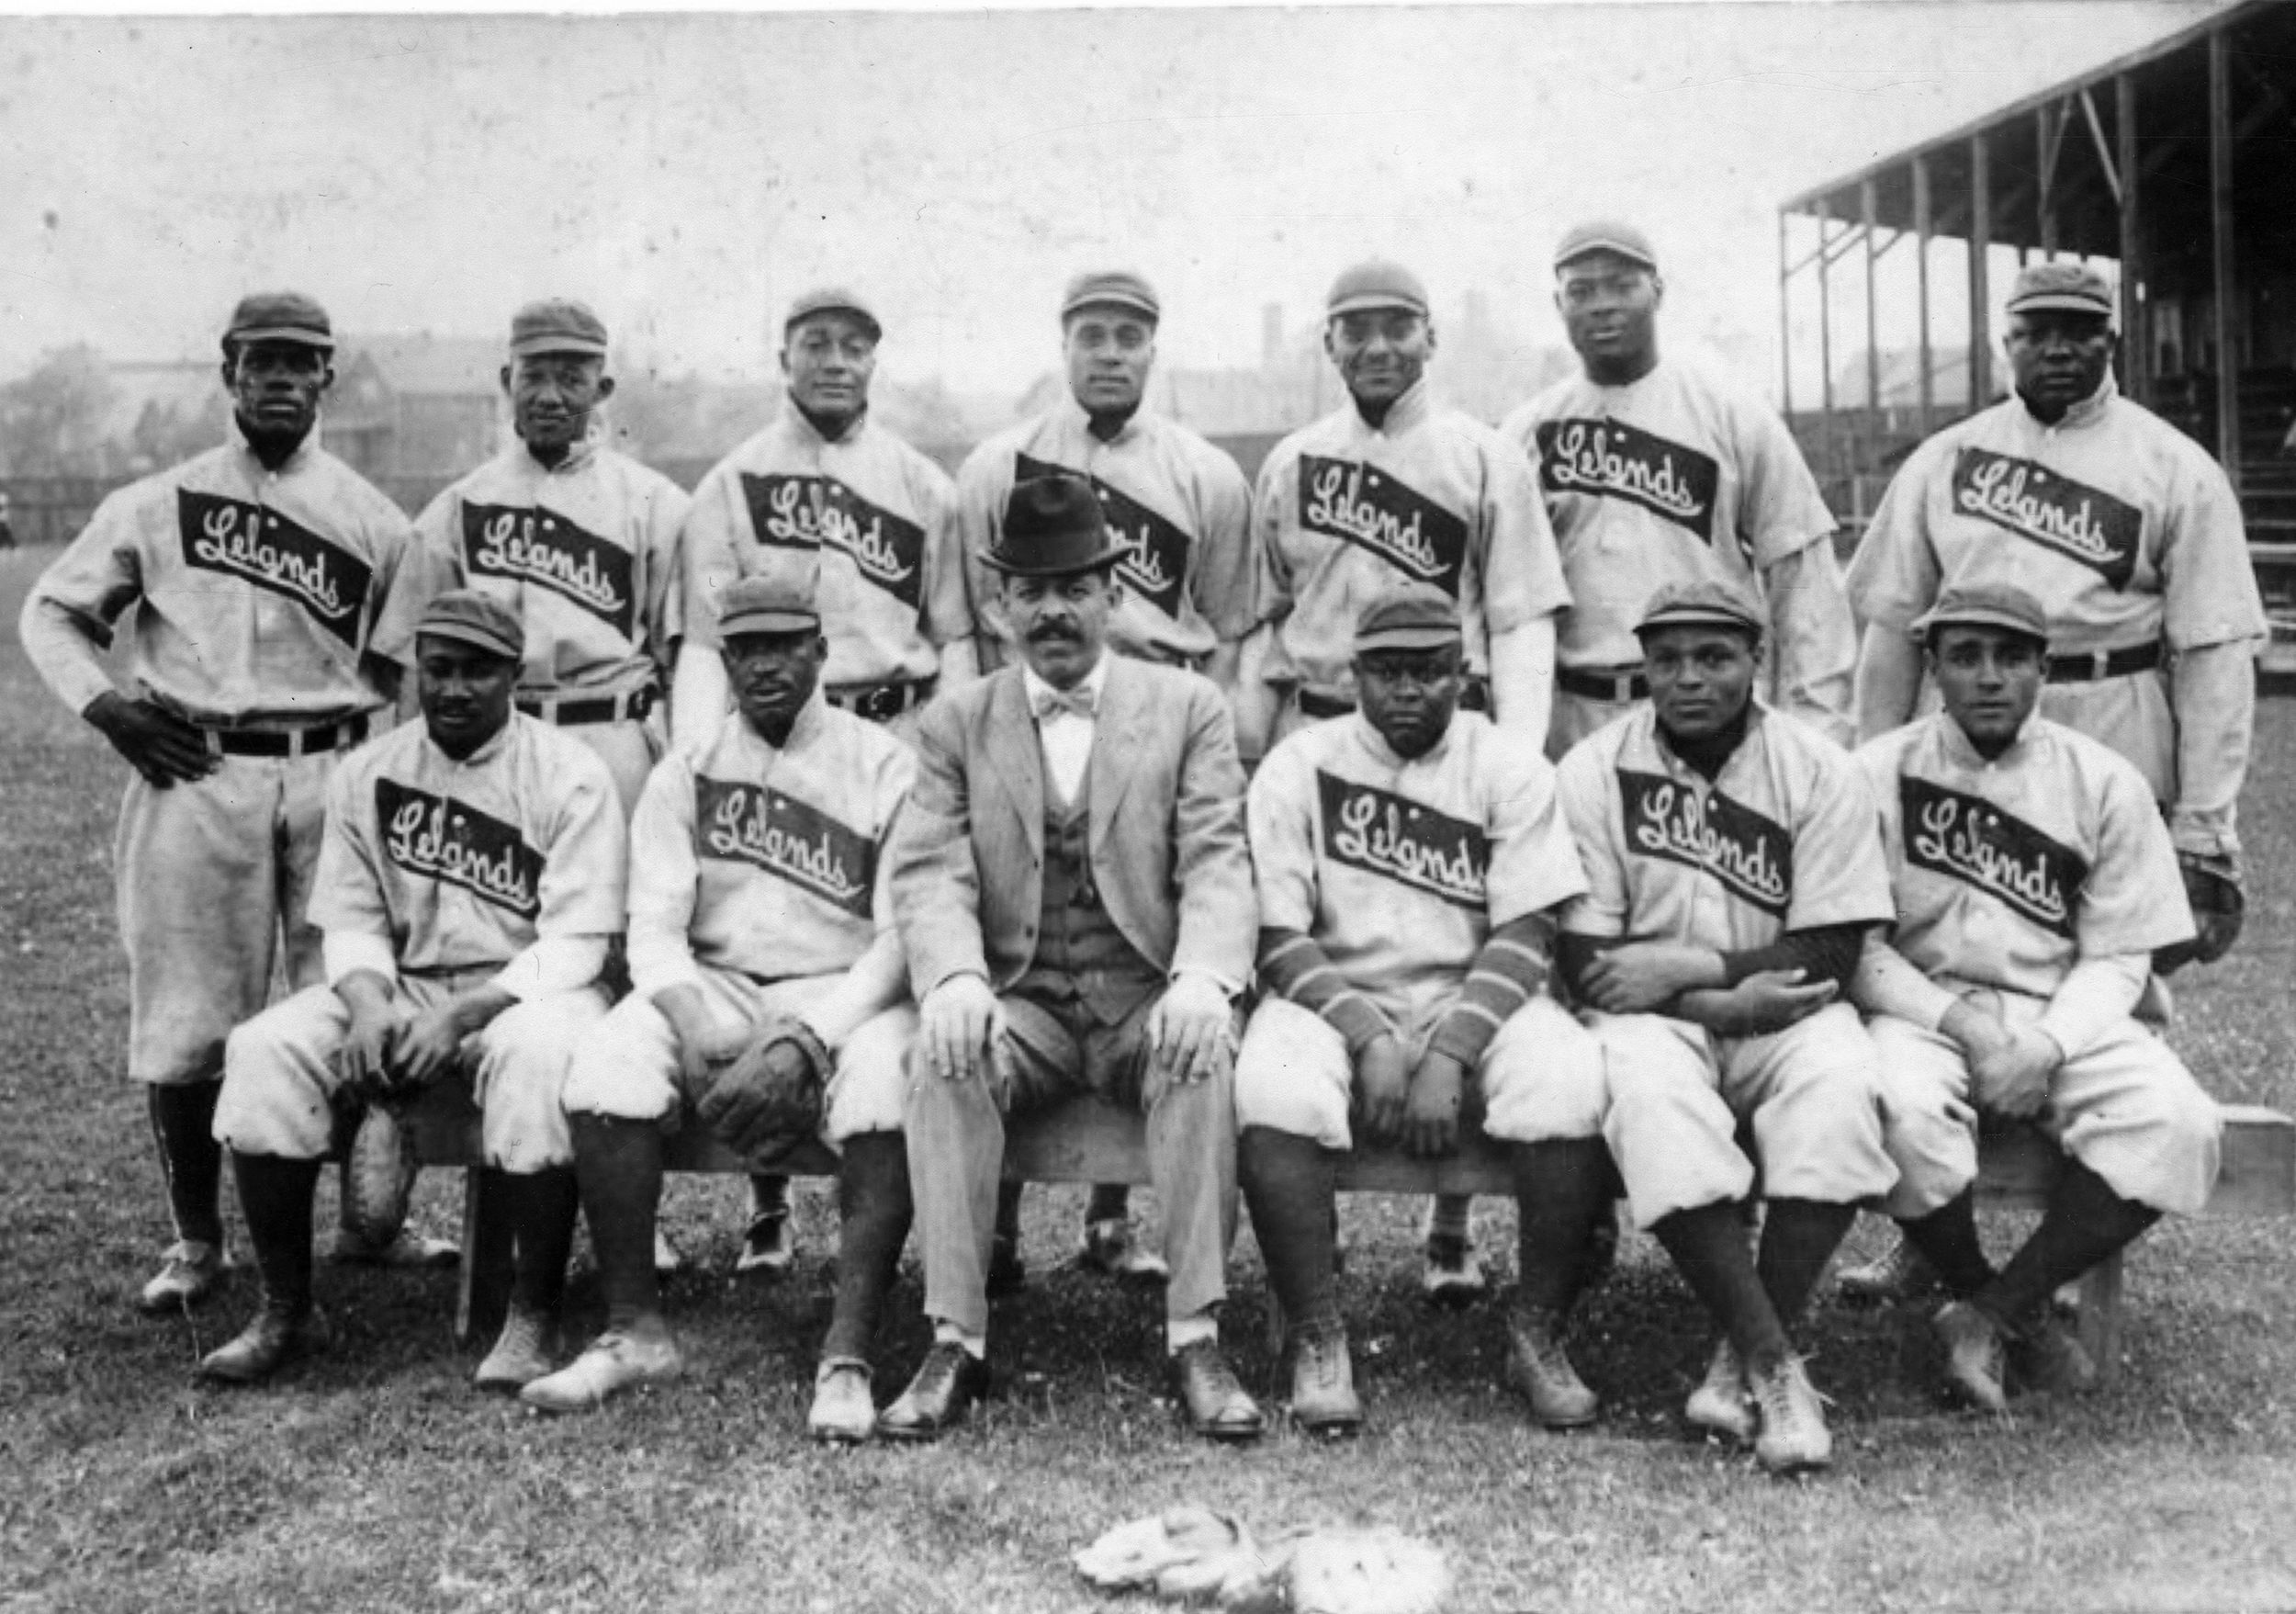 MLB: Remembering the forgotten Black heroes of baseball